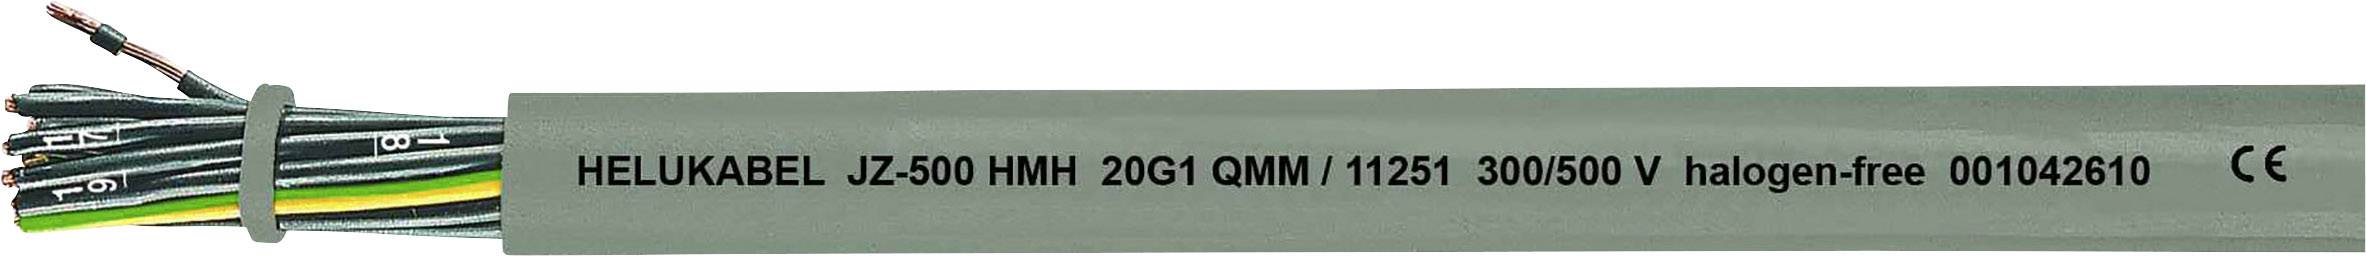 HELUKABEL JZ-500 HMH Steuerleitung 5 G 1.50 mm² Grau 11263-1000 1000 m